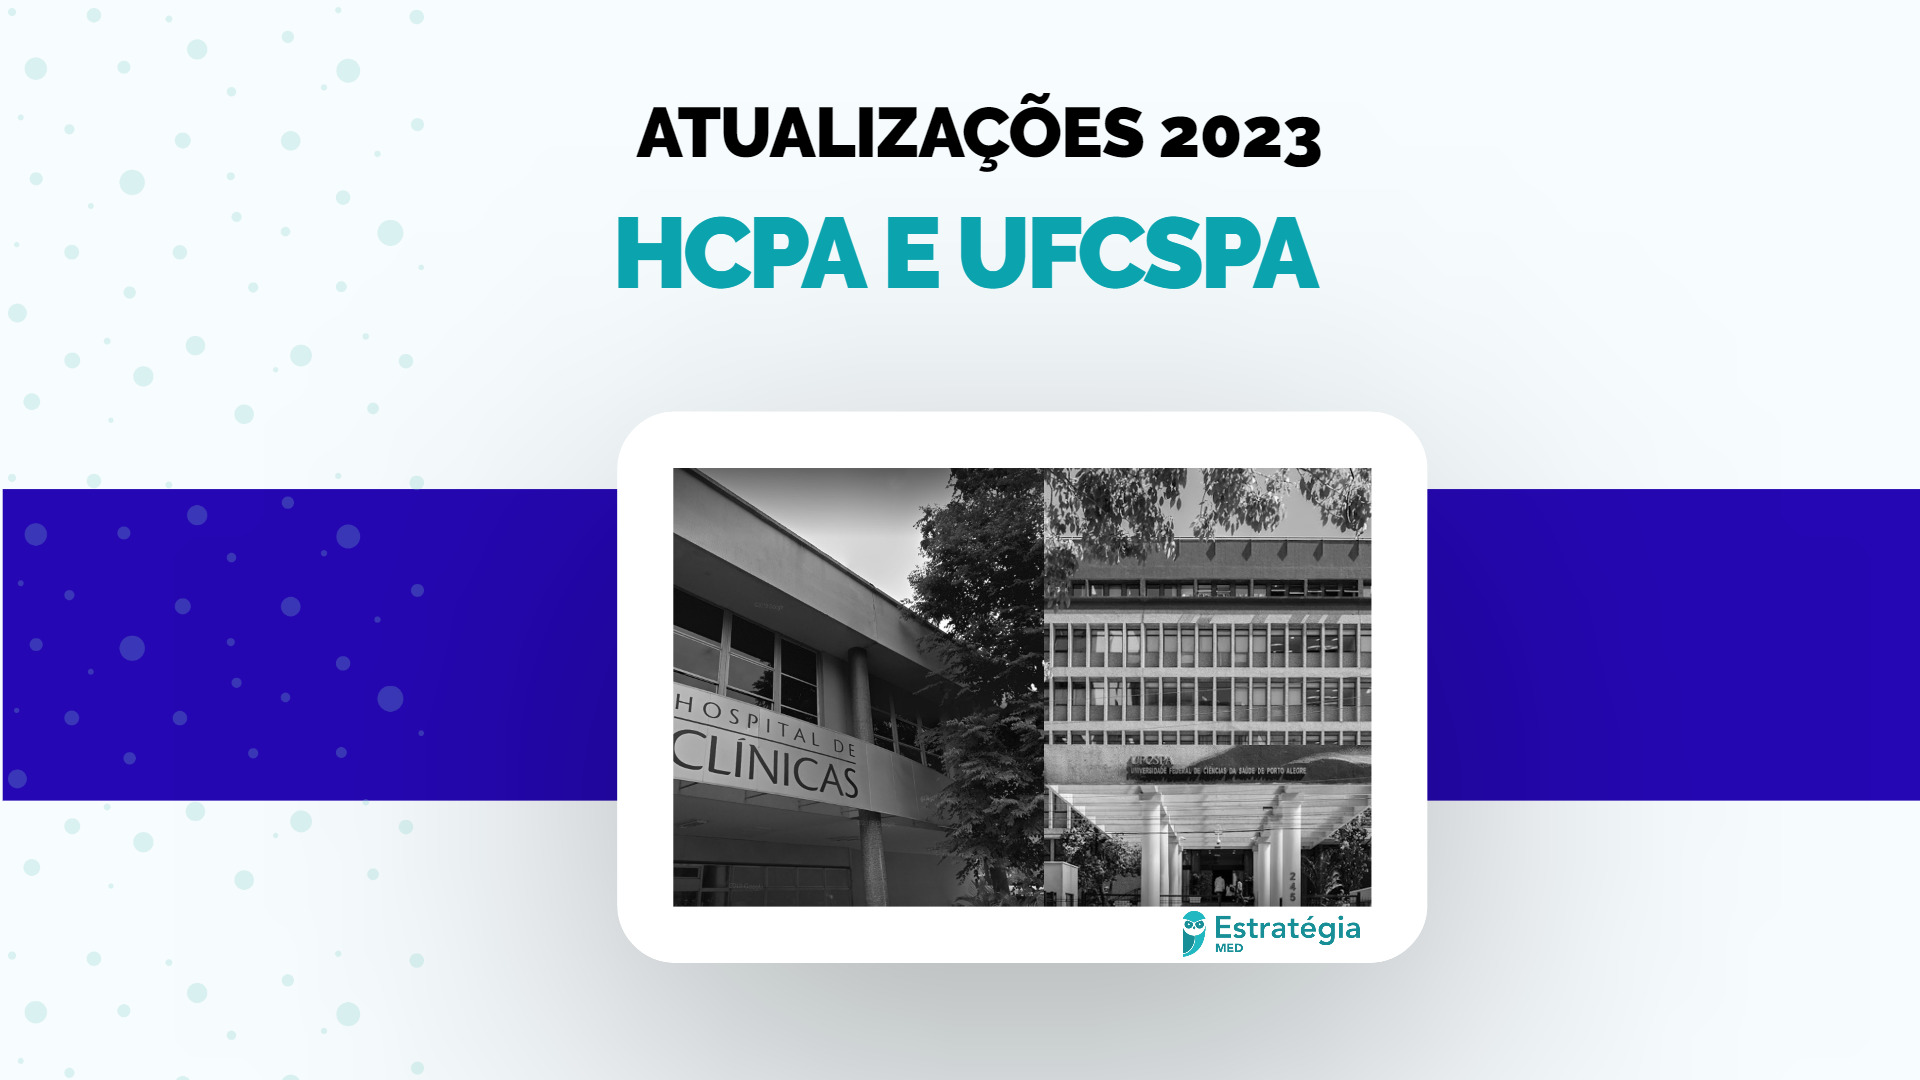 HCPA e UFCSPA 2023: período para solicitar isenção da taxa começa hoje (25)